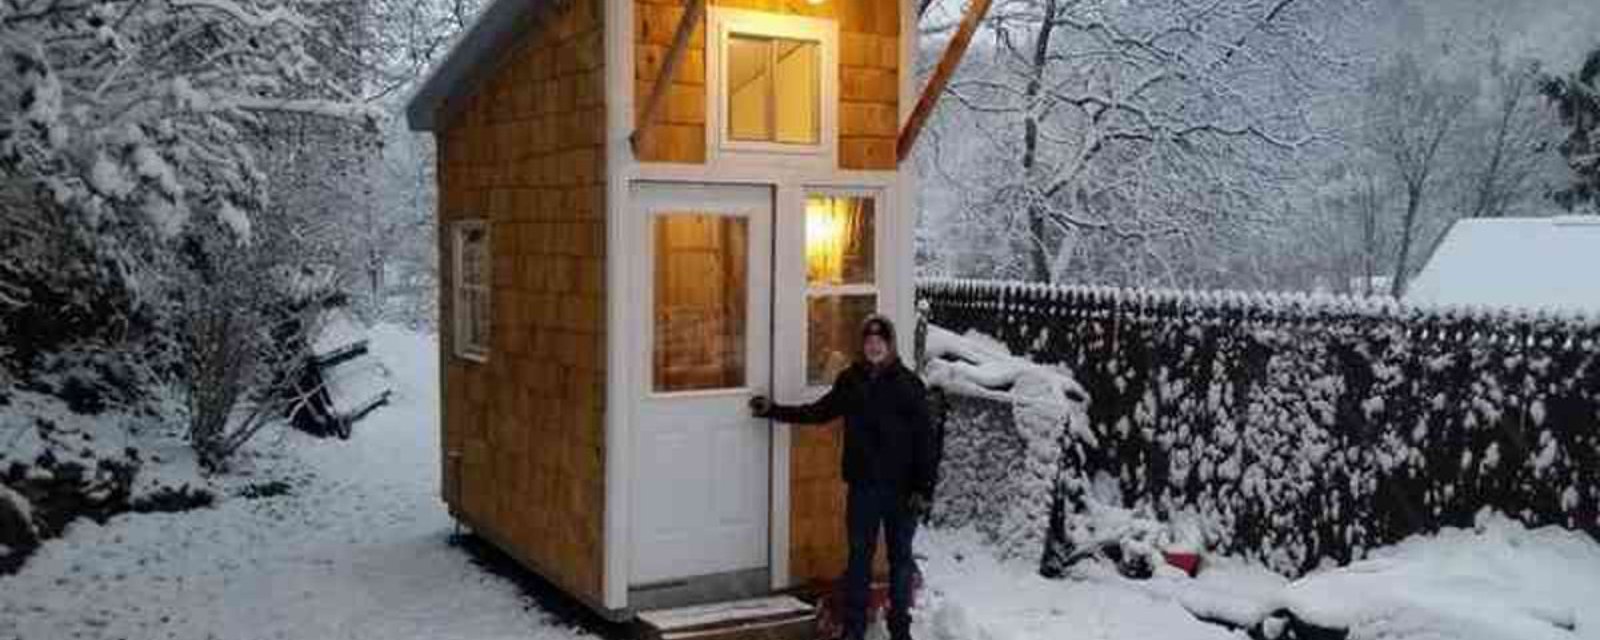 À 12 ans, ce jeune garçon construit la plus petite maison jamais vue, dans son jardin! 